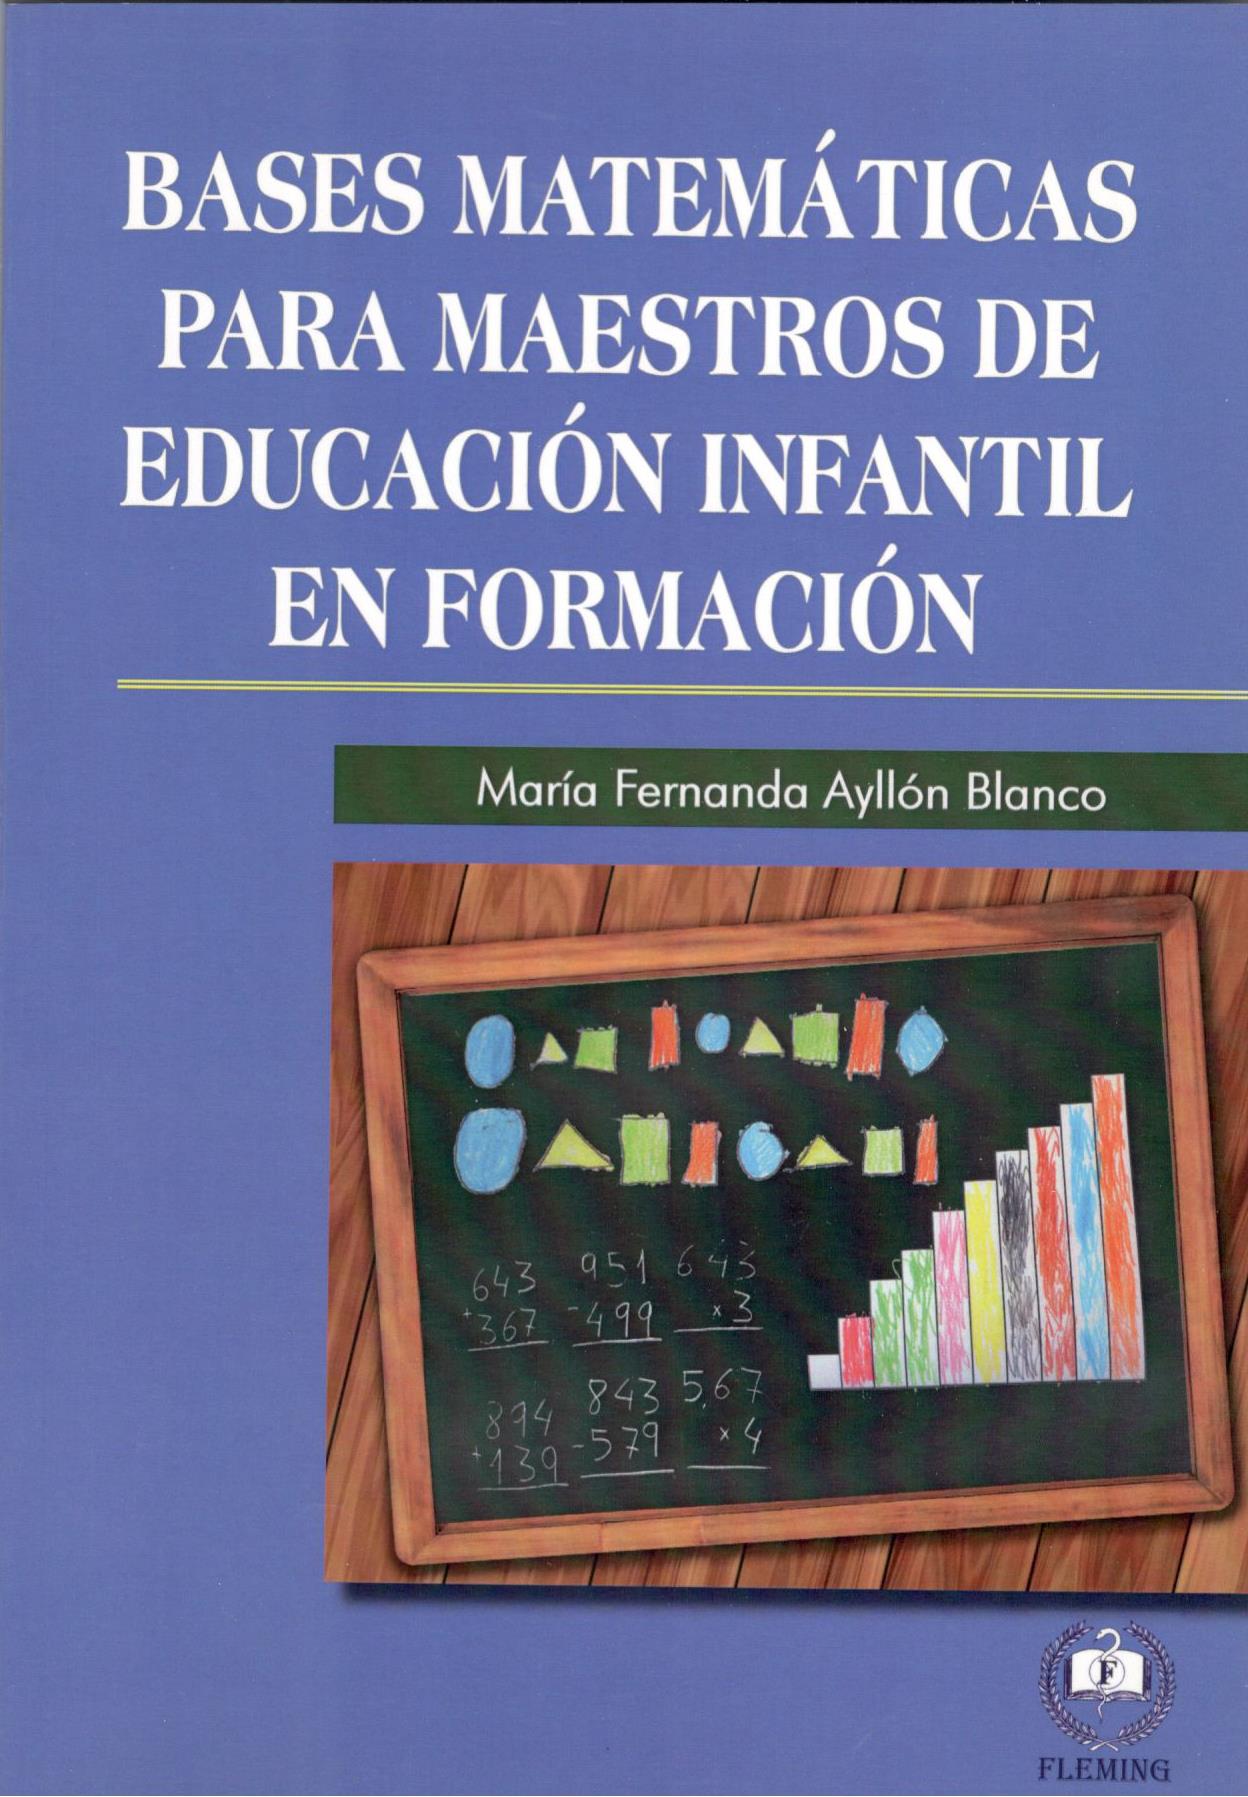 BASES MATEMATICAS PARA MAESTROS DE EDUCACION INFANTIL EN FORMACION